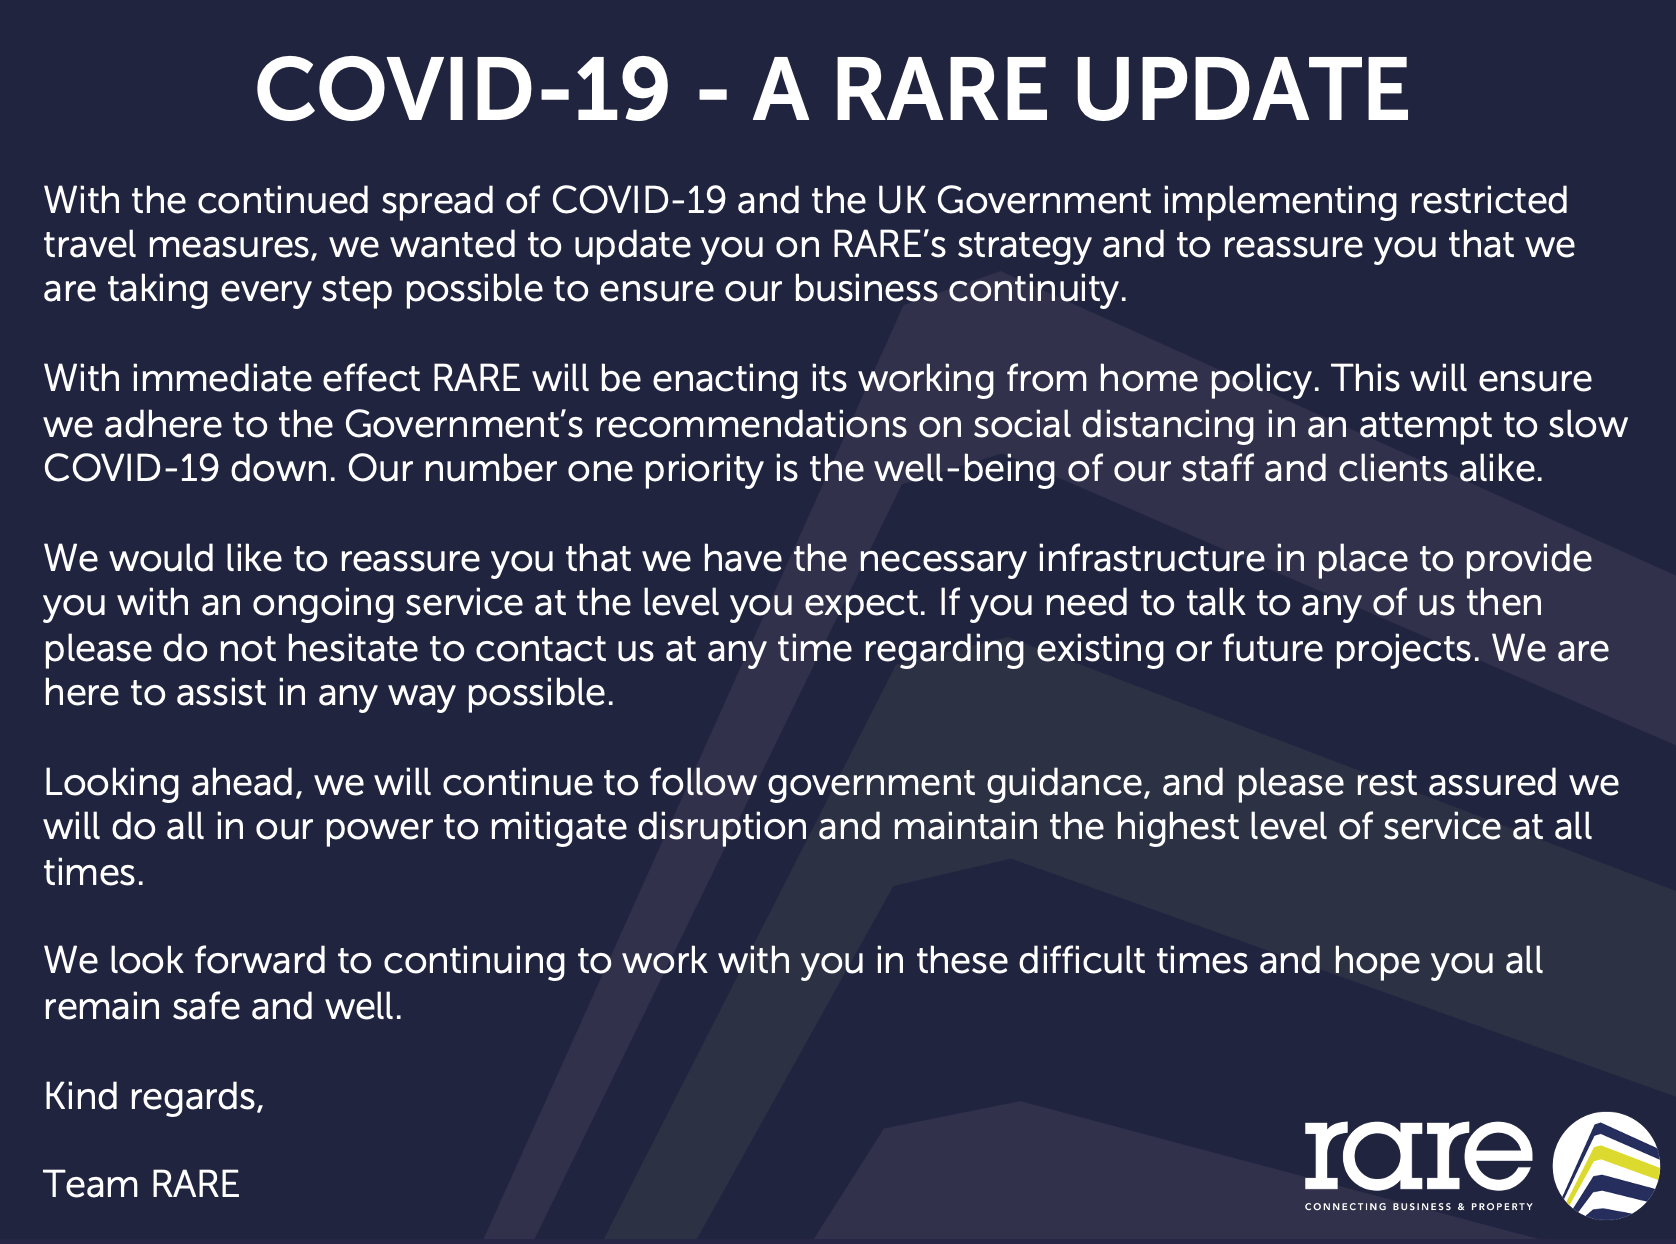 COVID-19 - A RARE Update